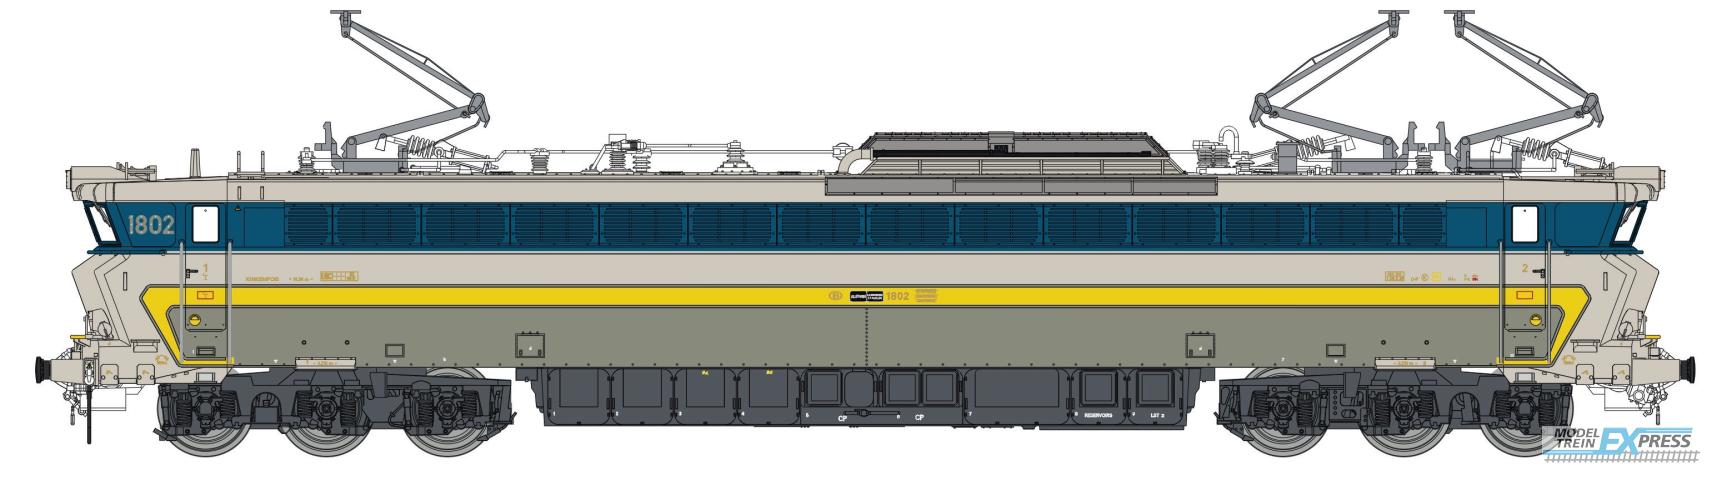 LS Models 12551 1802, grijs/inox, gele en licht blauwe band, nieuwe koplampen  /  Ep. IVB  /  SNCB  /  HO  /  AC  /  1 P.